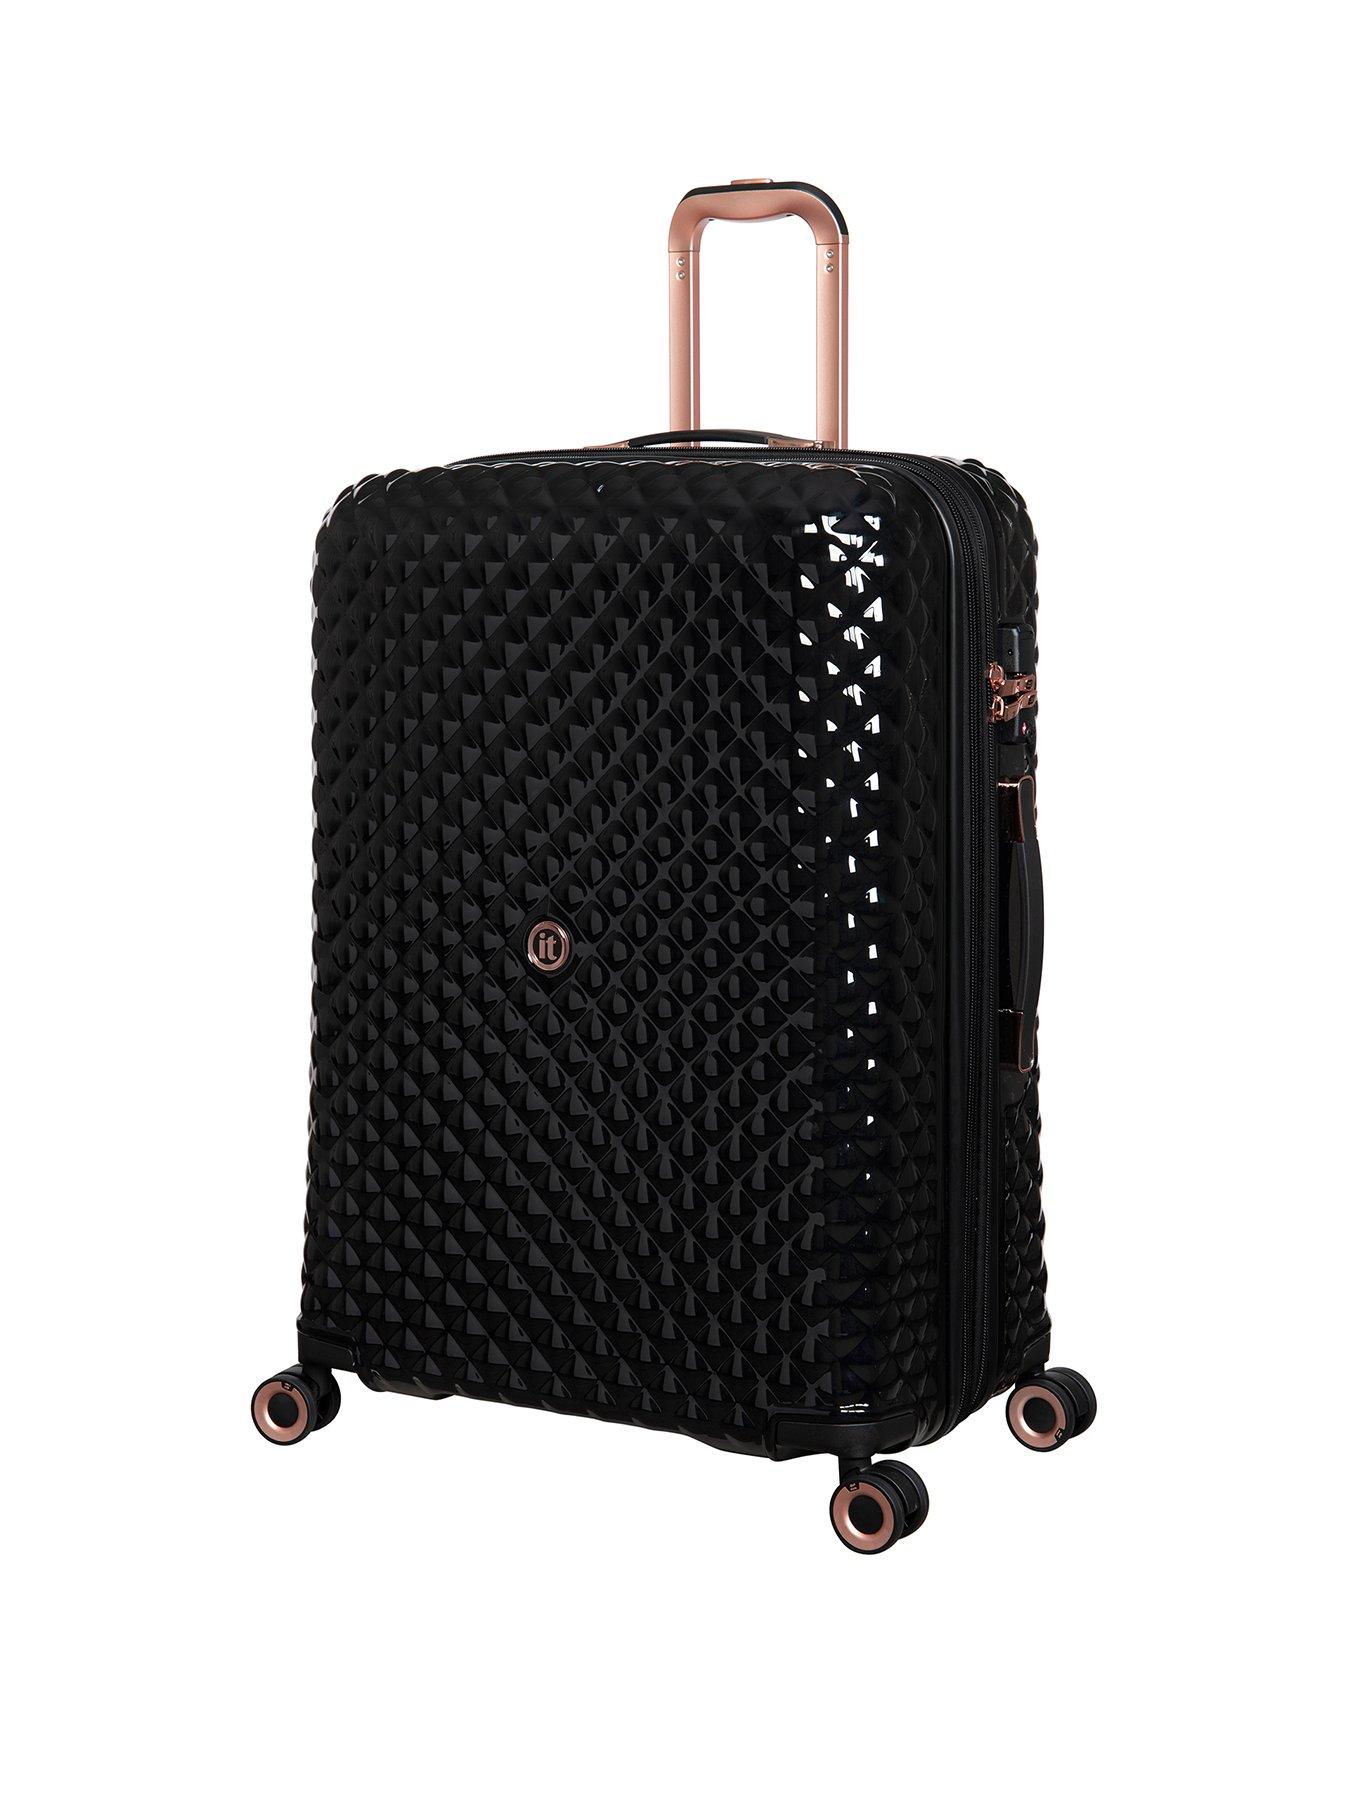 it Luggage Glitzy Hardshell Large Black Expandable Suitcase with TSA Lock